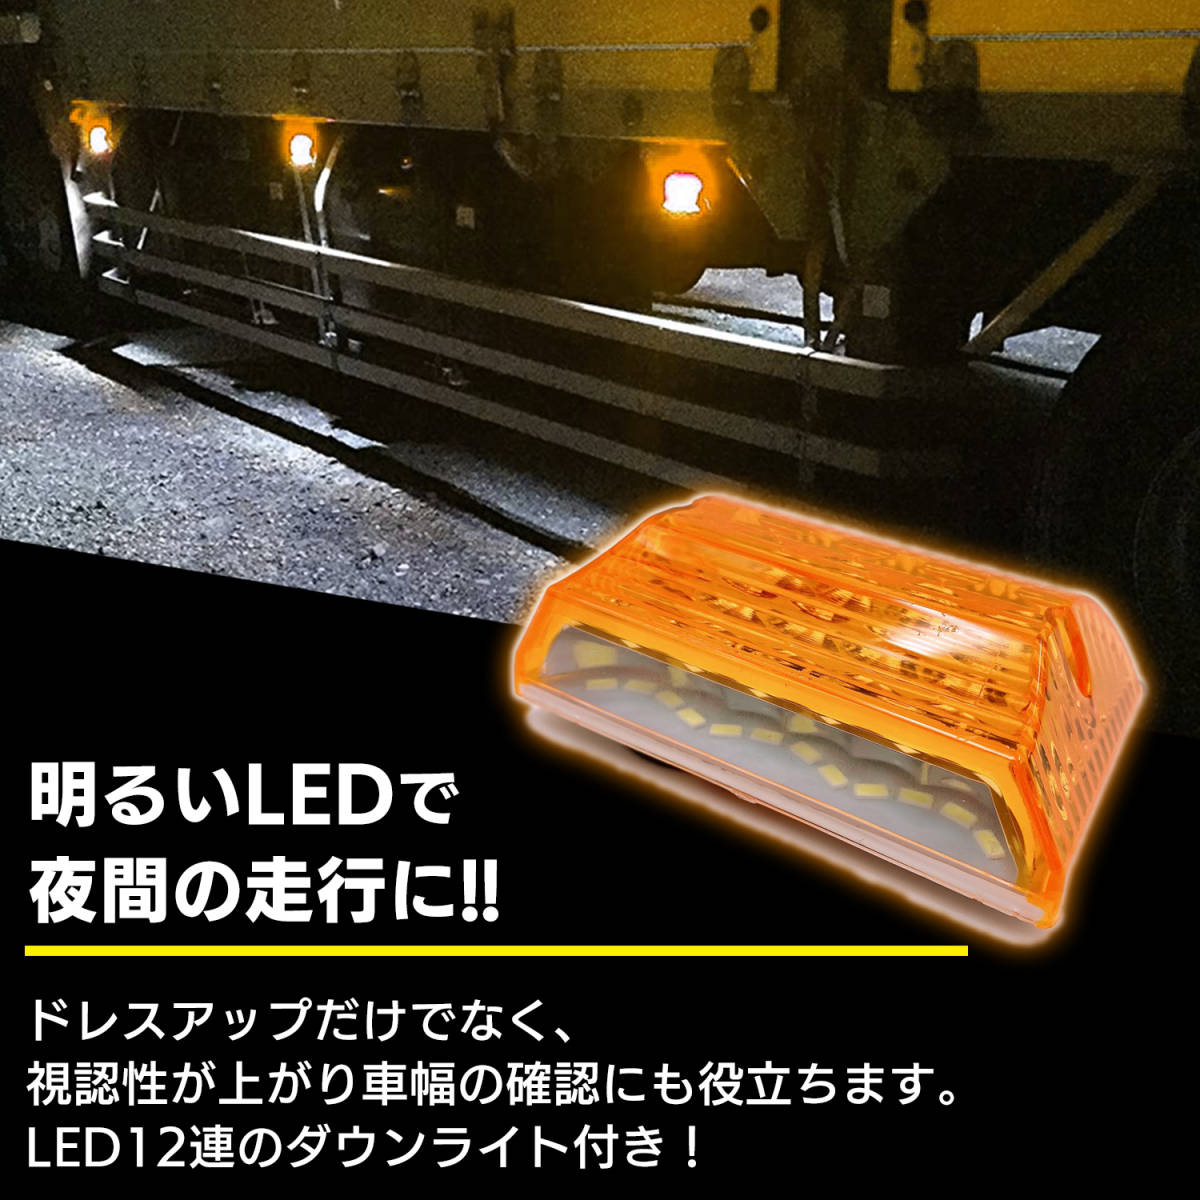 汎用 LED サイド マーカー 24V (オレンジ 10個) トラック デコトラ ダウン ライト ランプ 路肩灯 アンダー ドレスアップ カスタム 角型_画像2